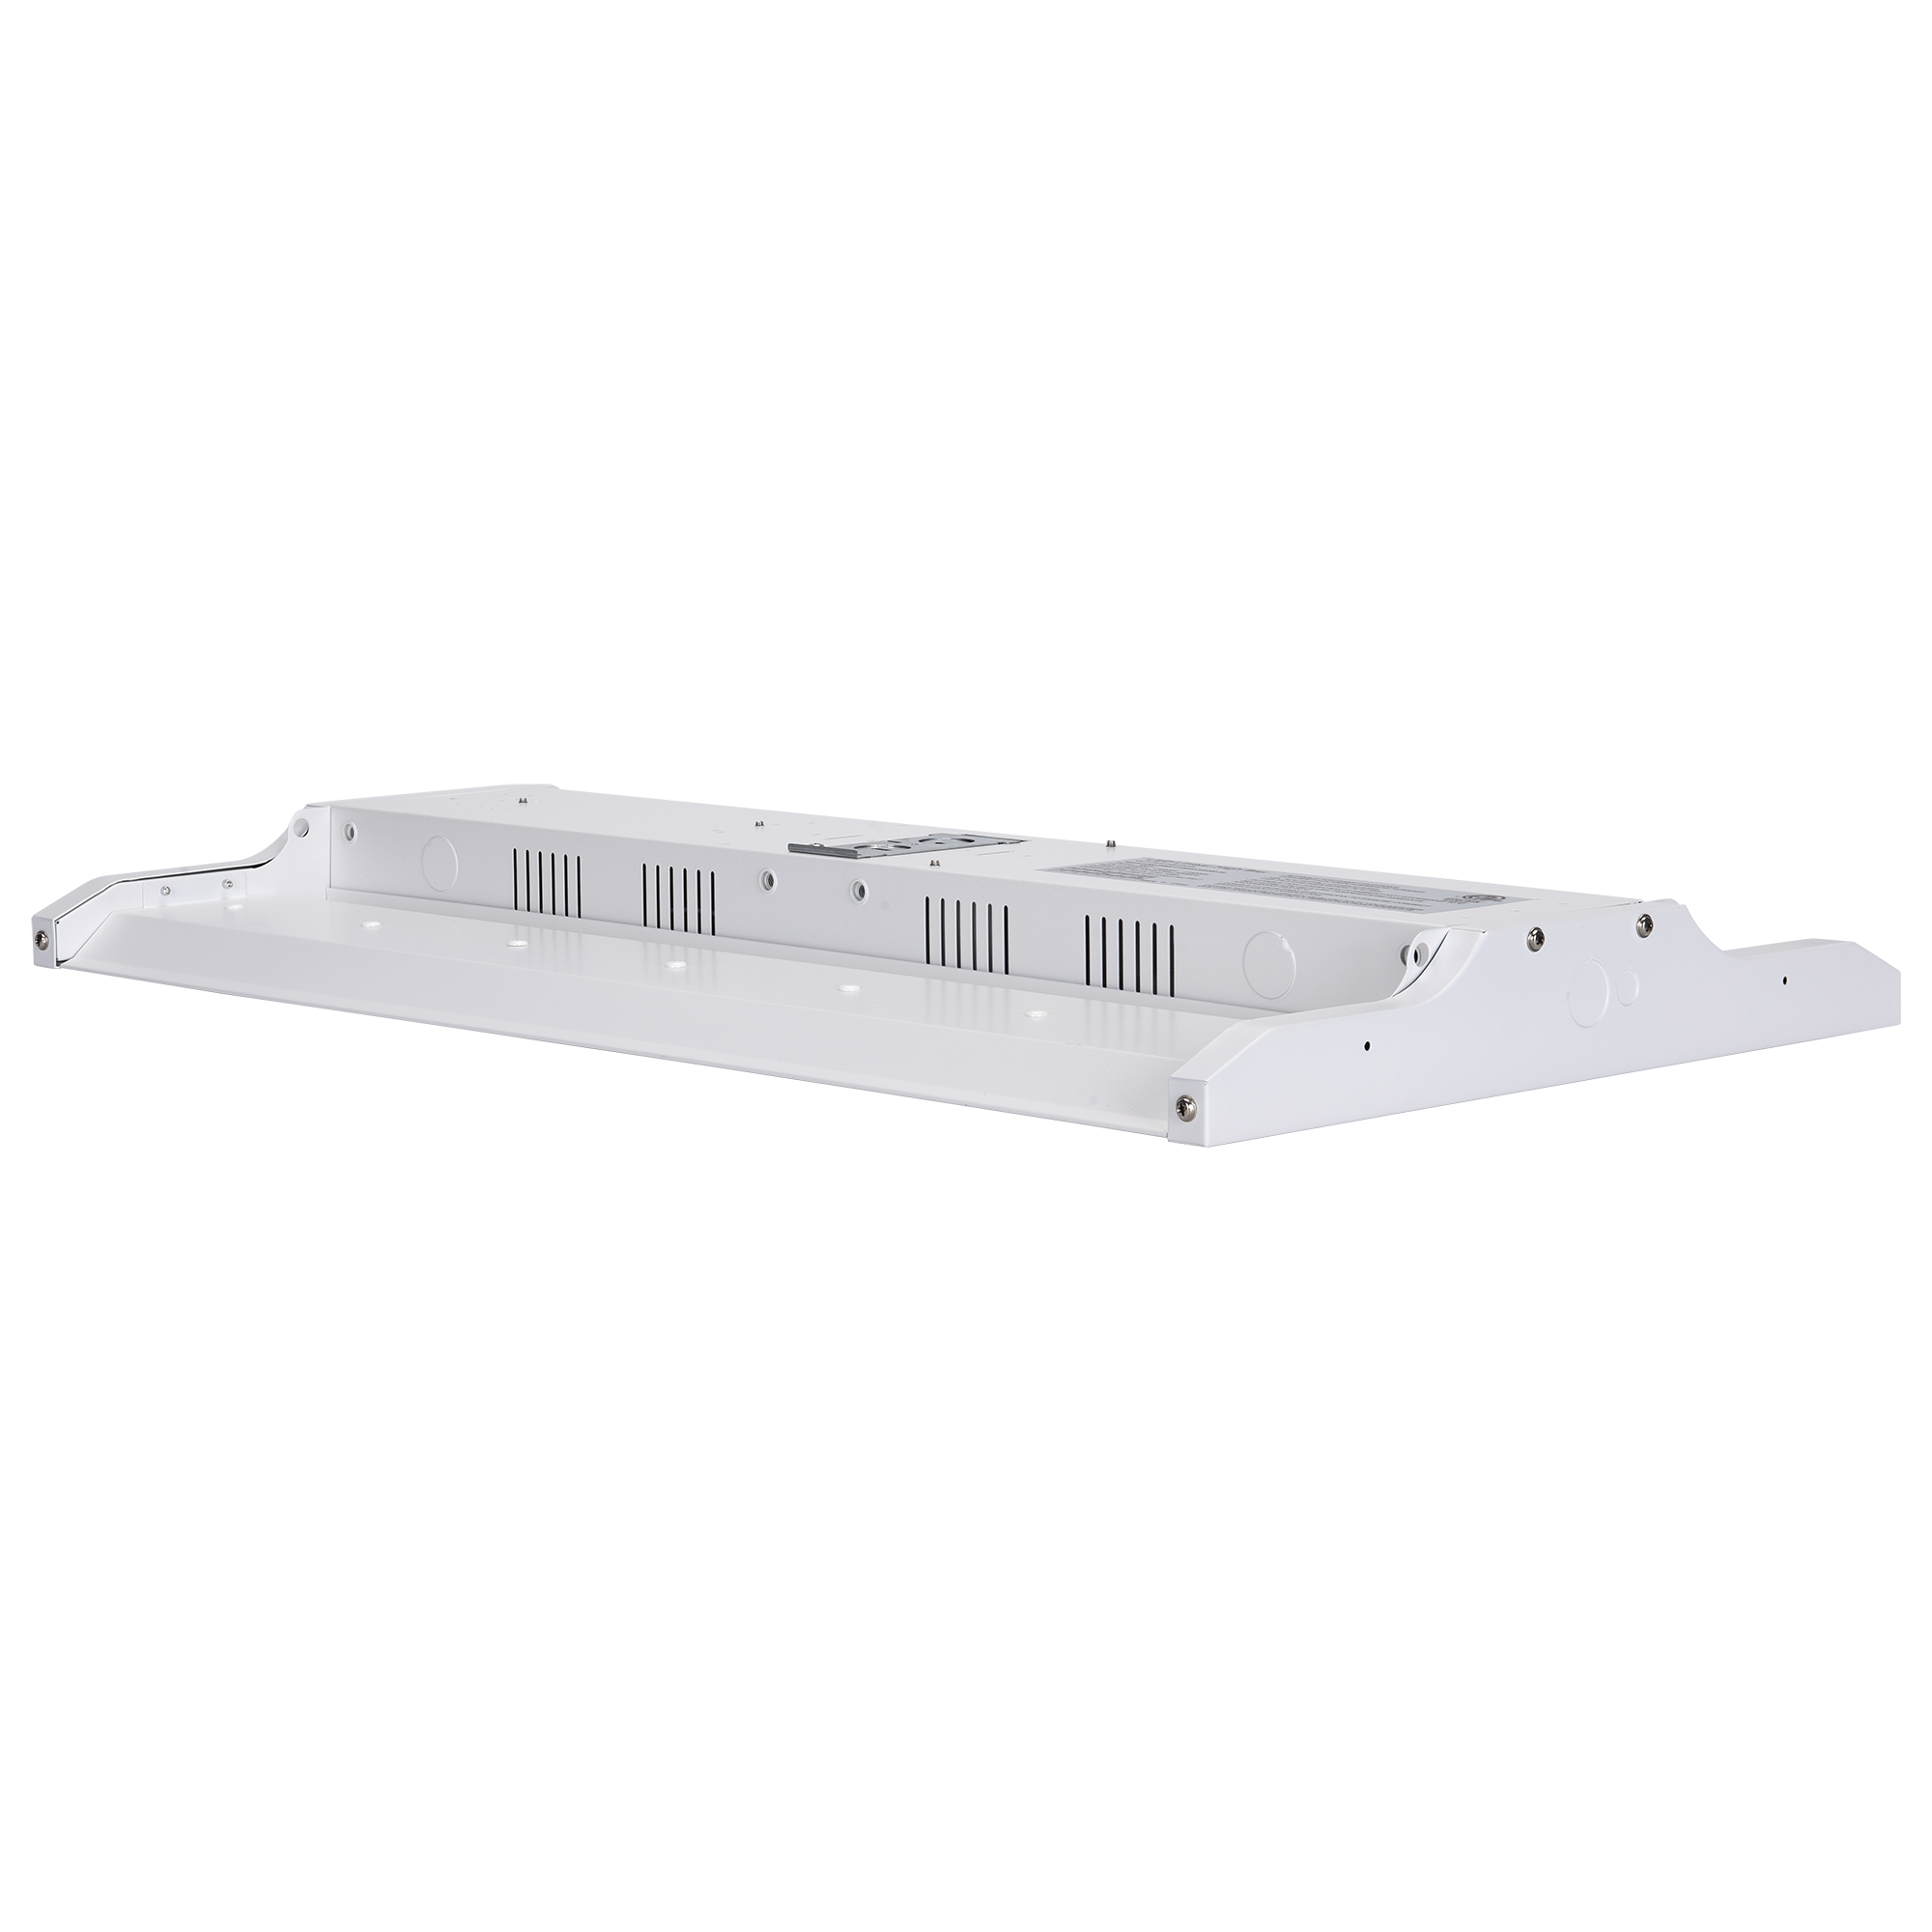 4ft 160W LED Linear High Bay Shop Light  - (3500K/4000K/5000K) CCT Selectable - 120-277V, 0-10V Dim, UL DLC Listed - Eco LED Lightings 